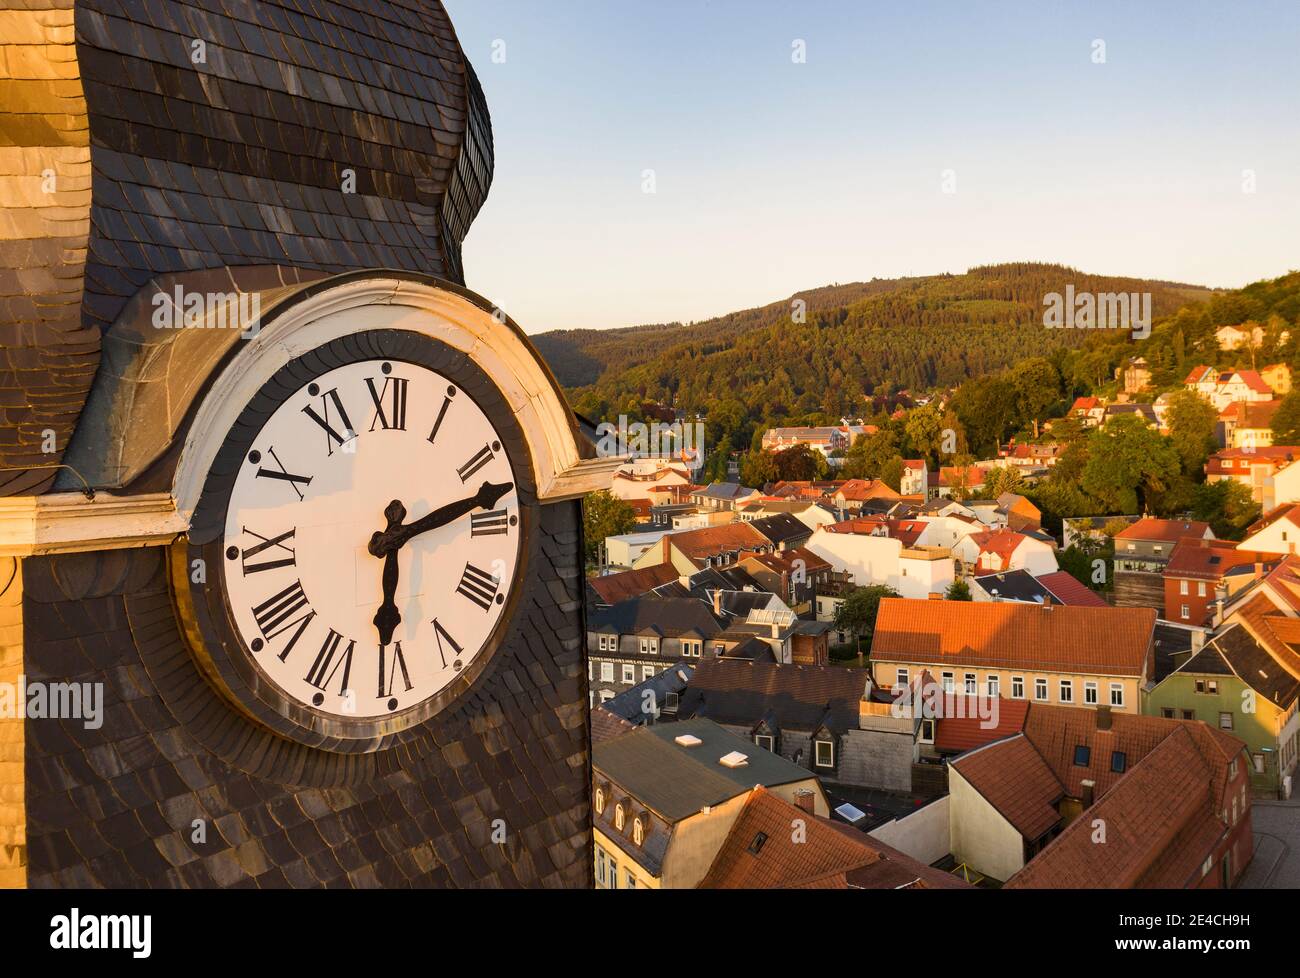 Allemagne, Thuringe, Ilmenau, ville, horloge de l'église, montagnes, vue d'ensemble, vue aérienne Banque D'Images